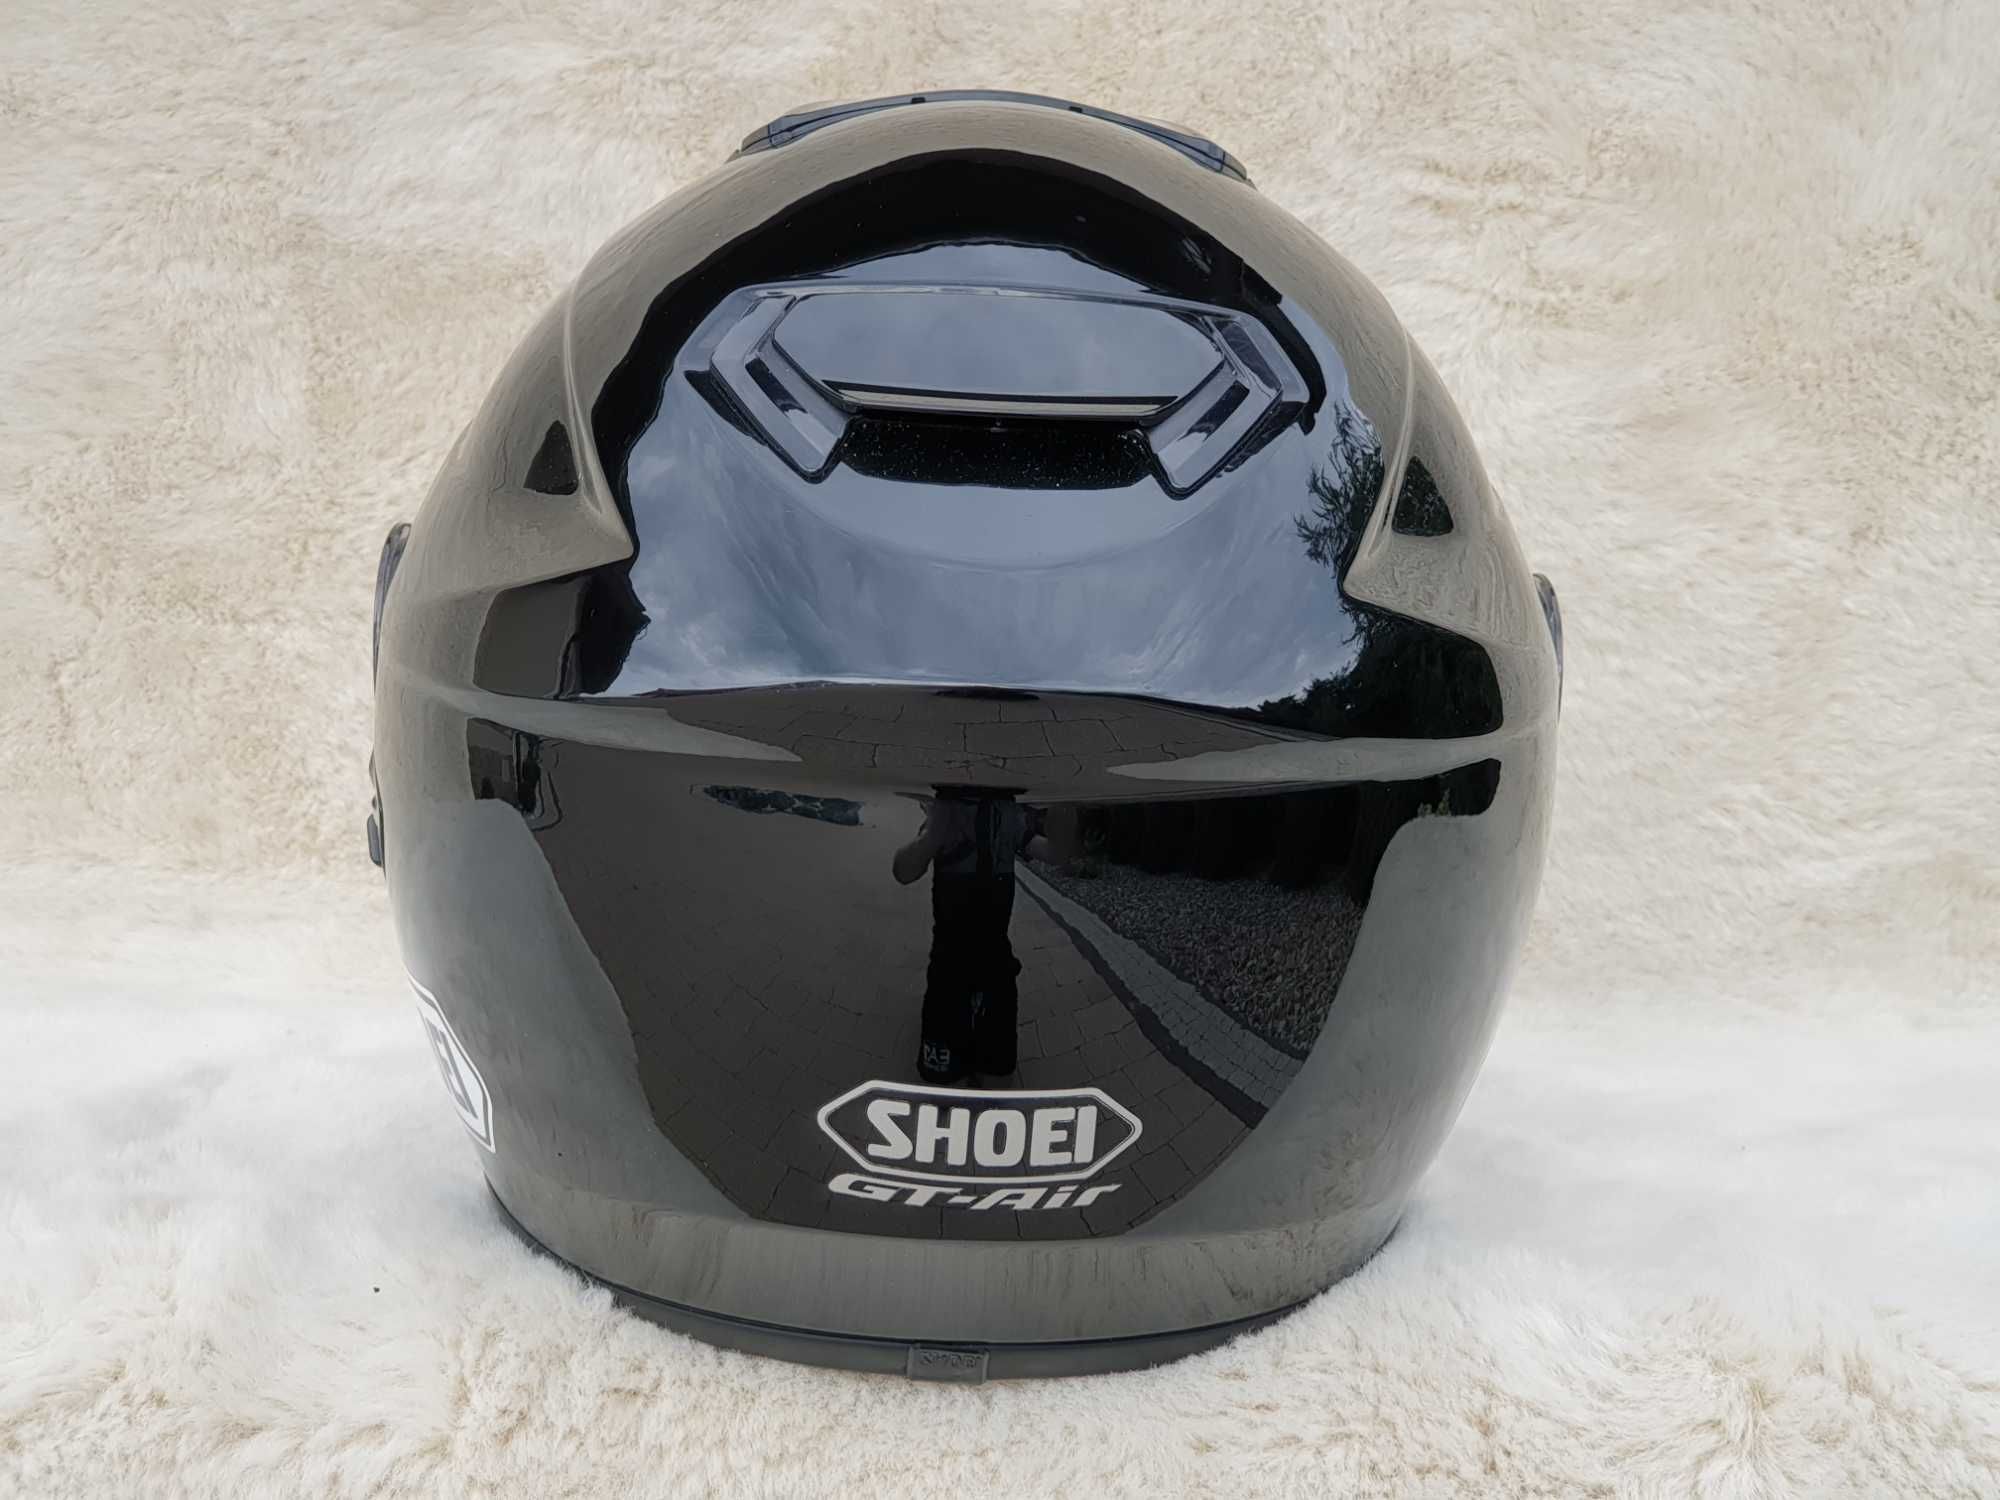 Shoei Gt Air XS kask motocyklowy z blendą , perfekcyjny